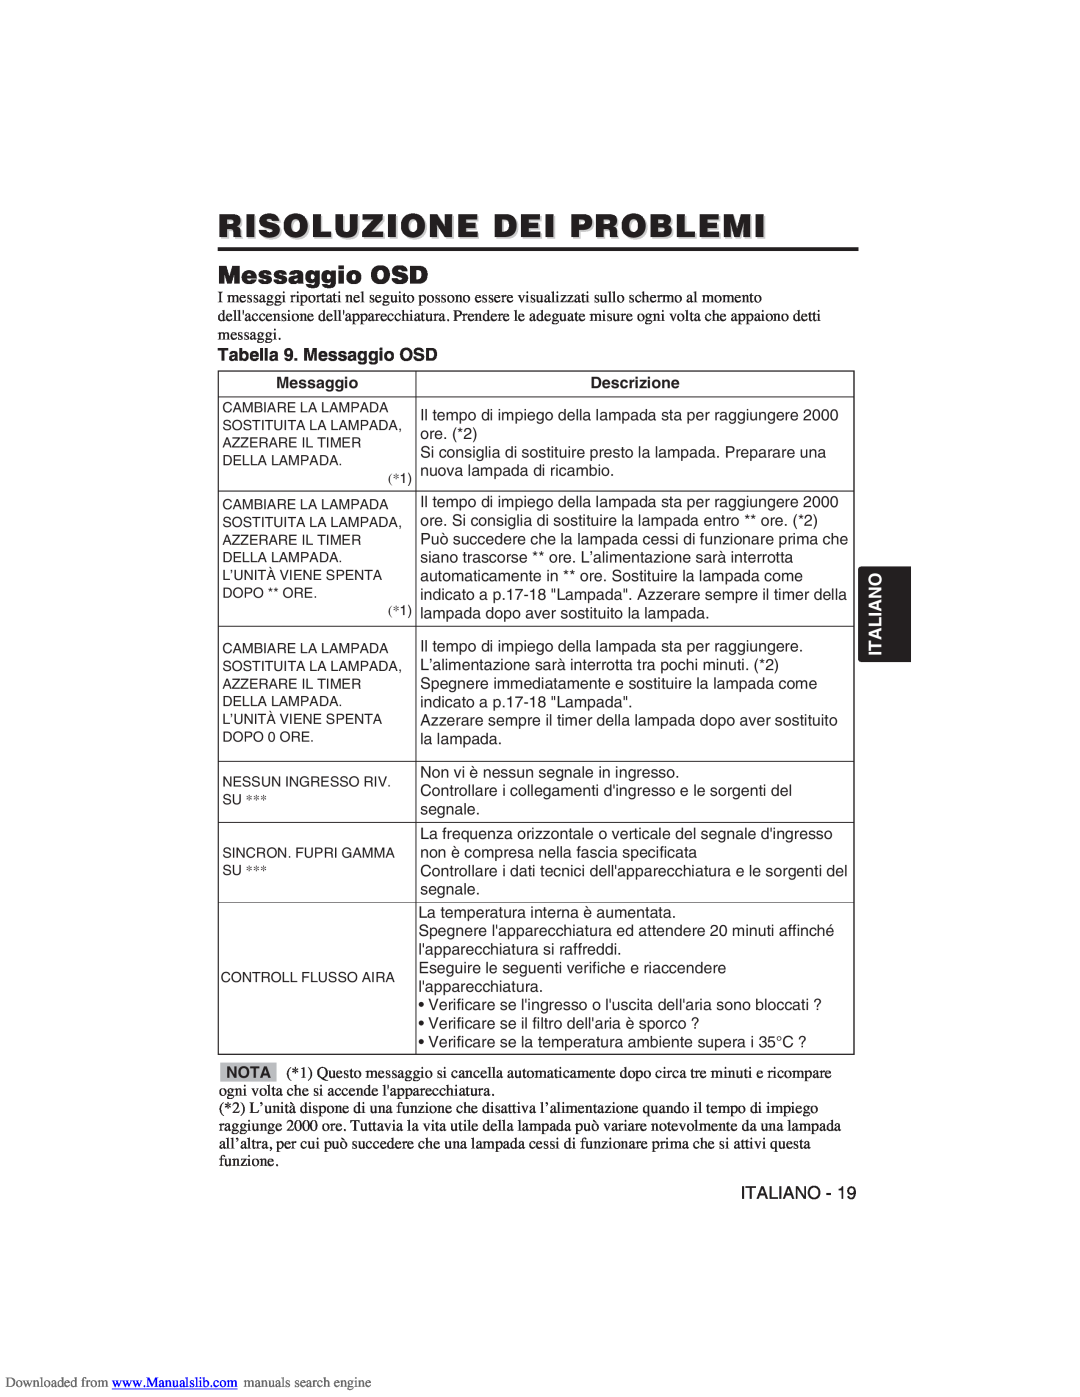 Hitachi CP-X275W user manual Risoluzione Dei Problemi, Tabella 9. Messaggio OSD, Italiano 